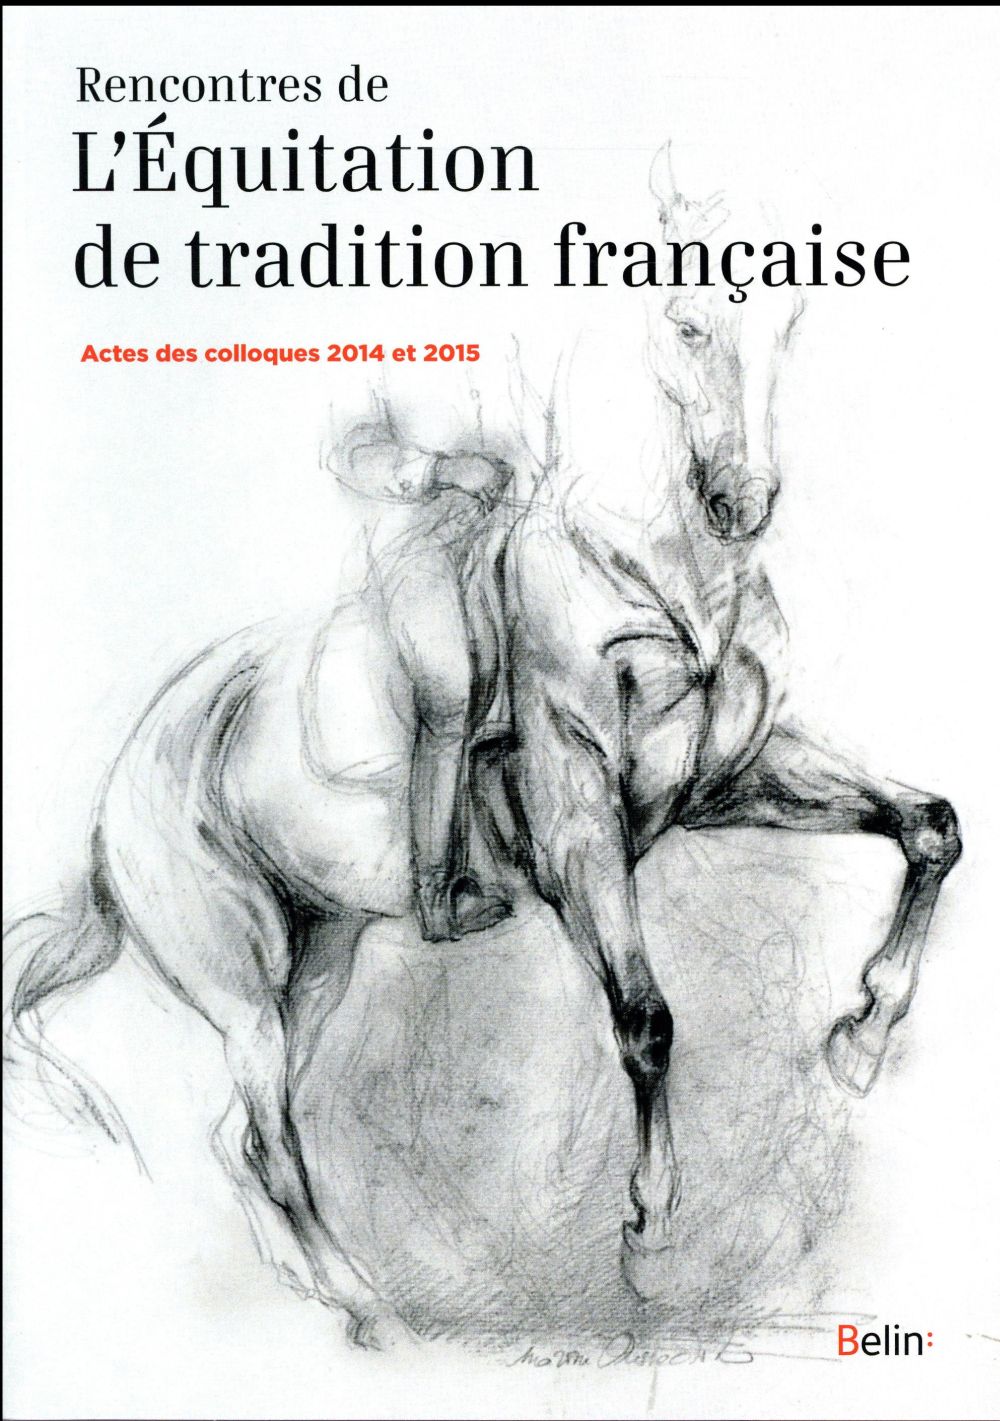 RENCONTRES DE L'EQUITATION DE TRADITION FRANCAISE - ACTES DES COLLOQUES 2014 ET 2015